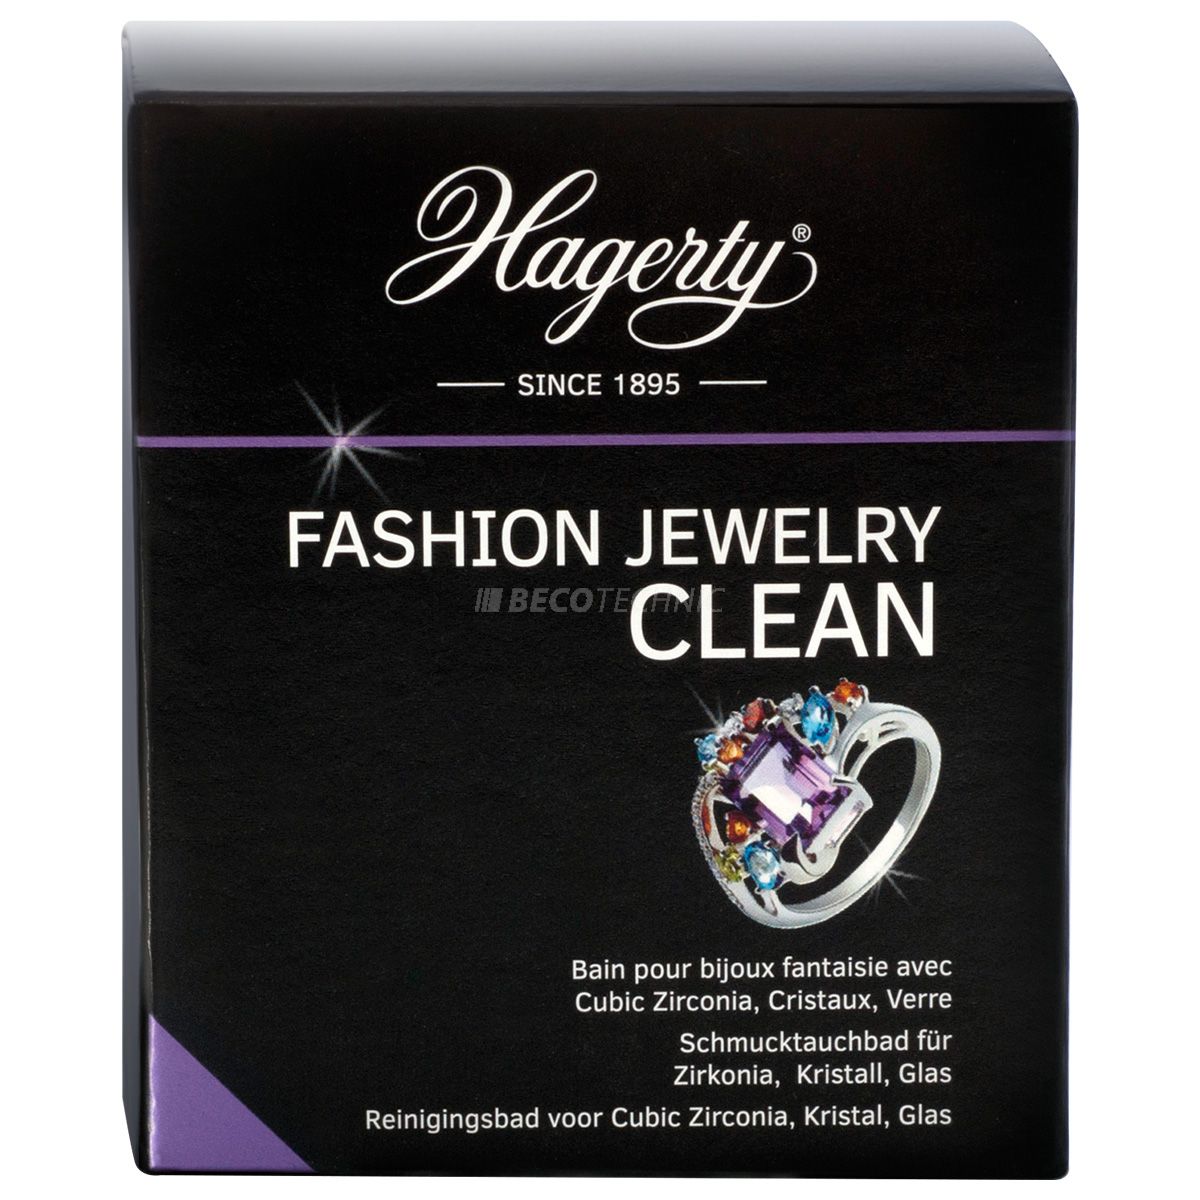 Hagerty Fashion Jewelry Clean, Tauchbad für Juwelen für Juwelen, 170 ml